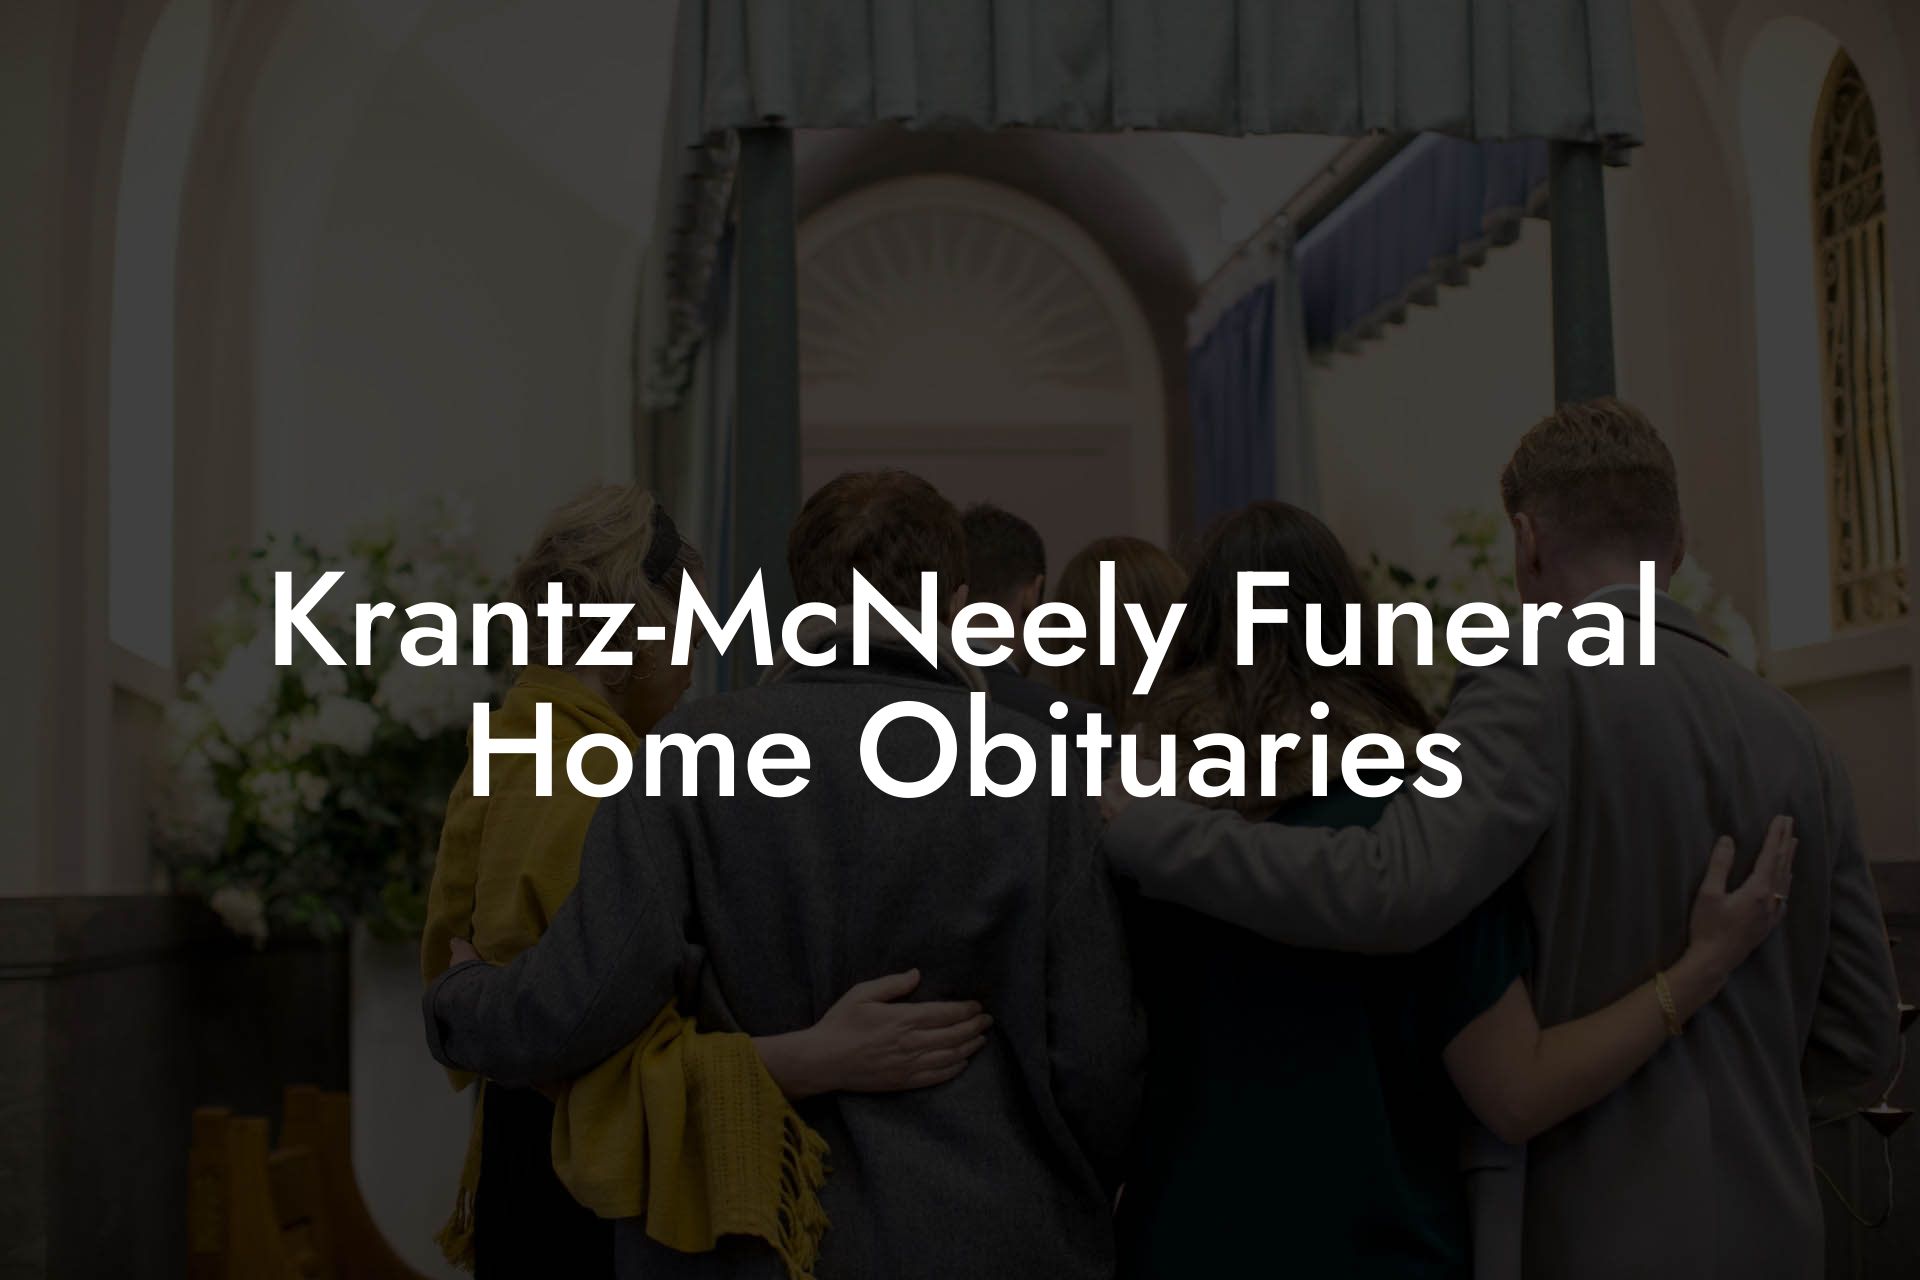 Krantz-McNeely Funeral Home Obituaries